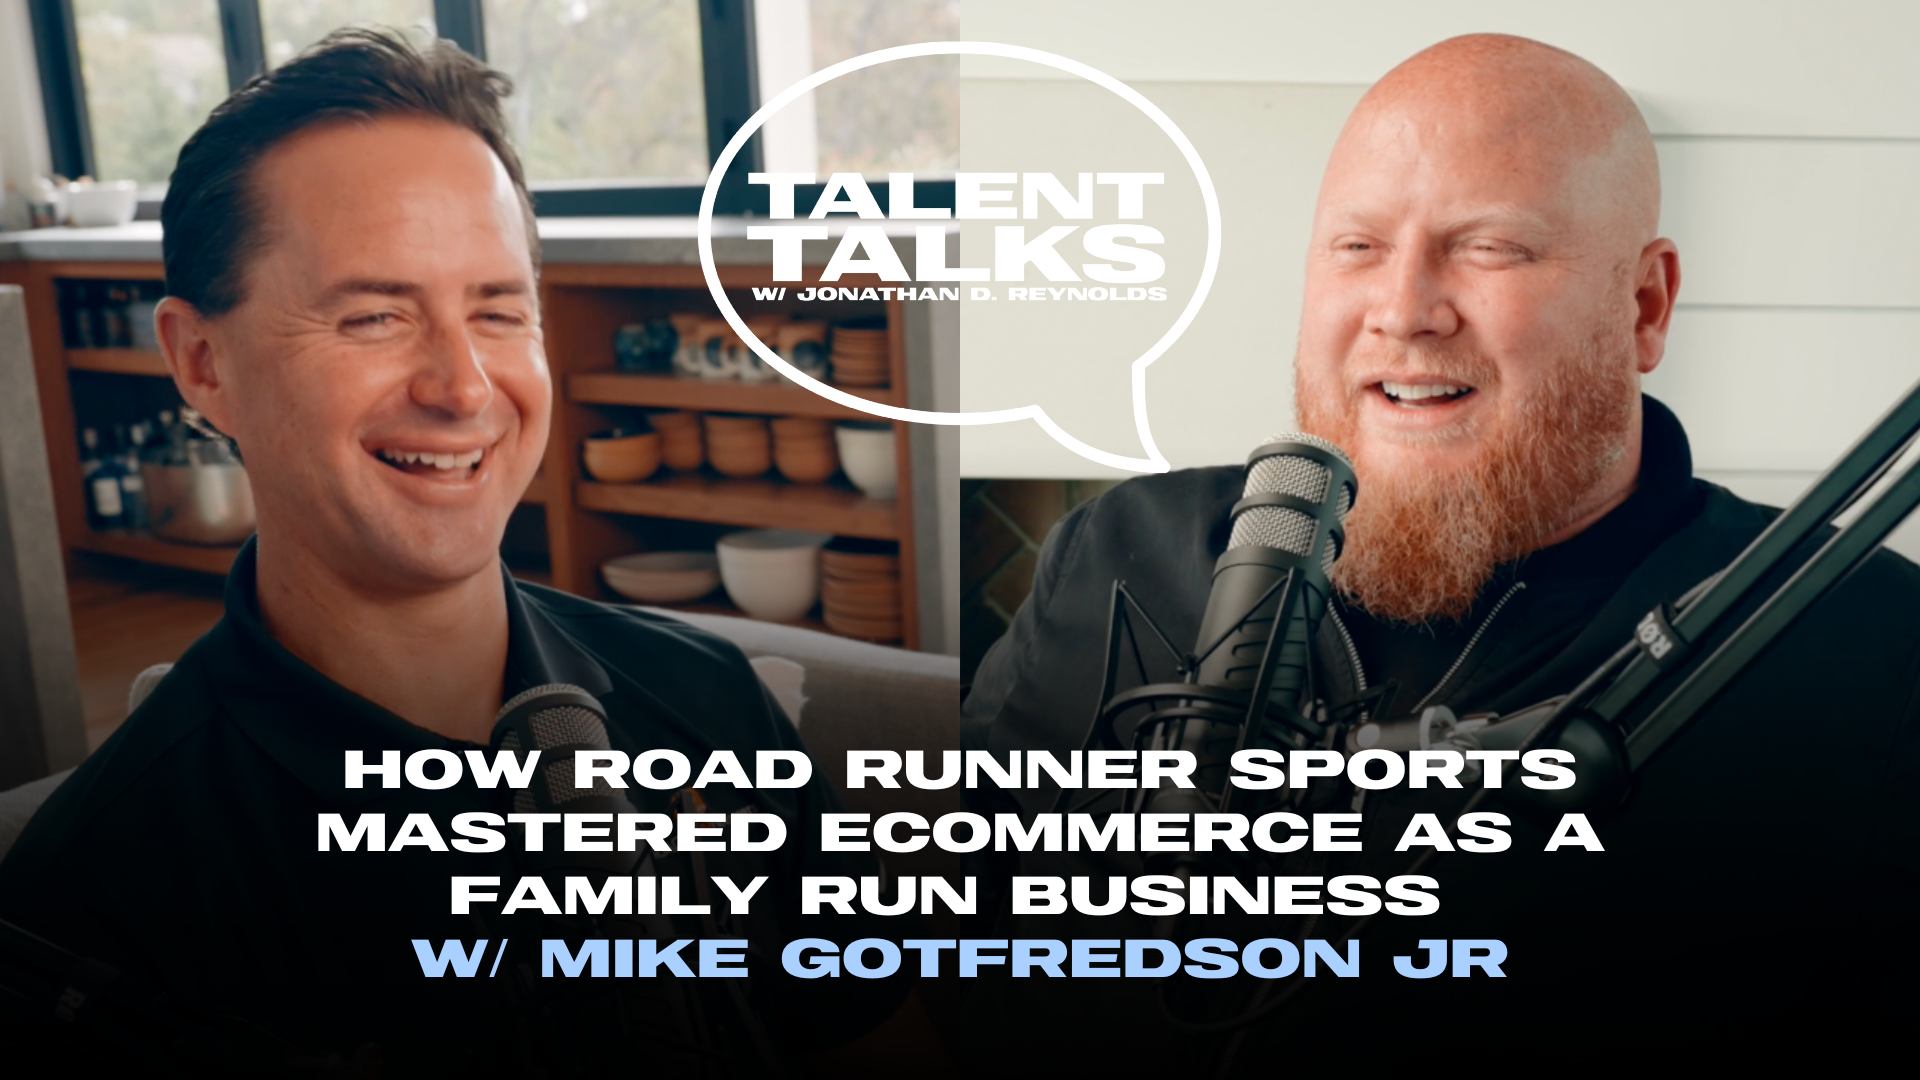 Talent Talks - Mike Gotfredson (1)